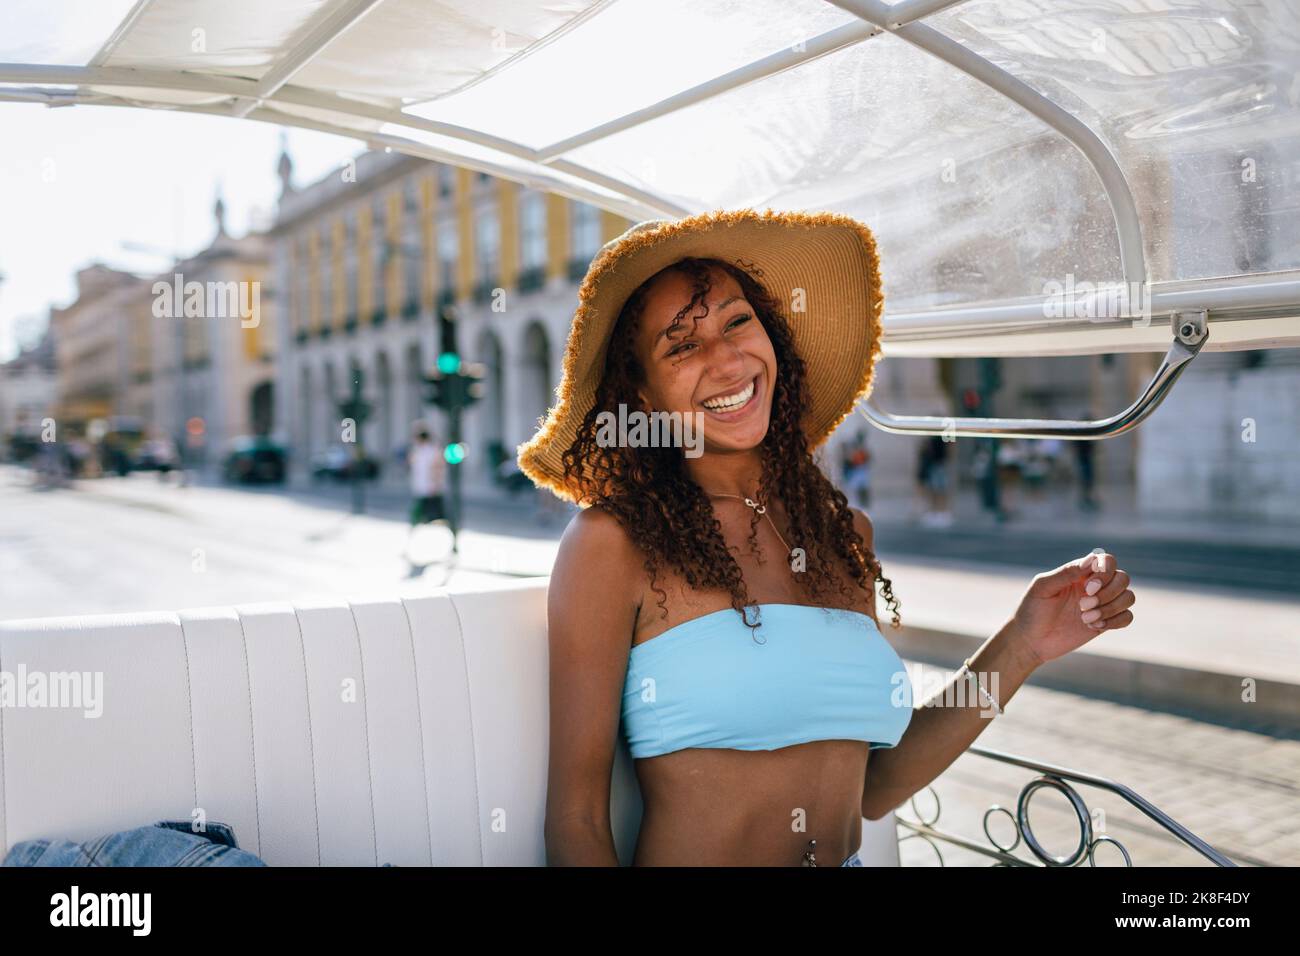 Fröhliche junge Frau mit Hut, die an sonnigen Tagen Tuk Tuk Ride nimmt Stockfoto